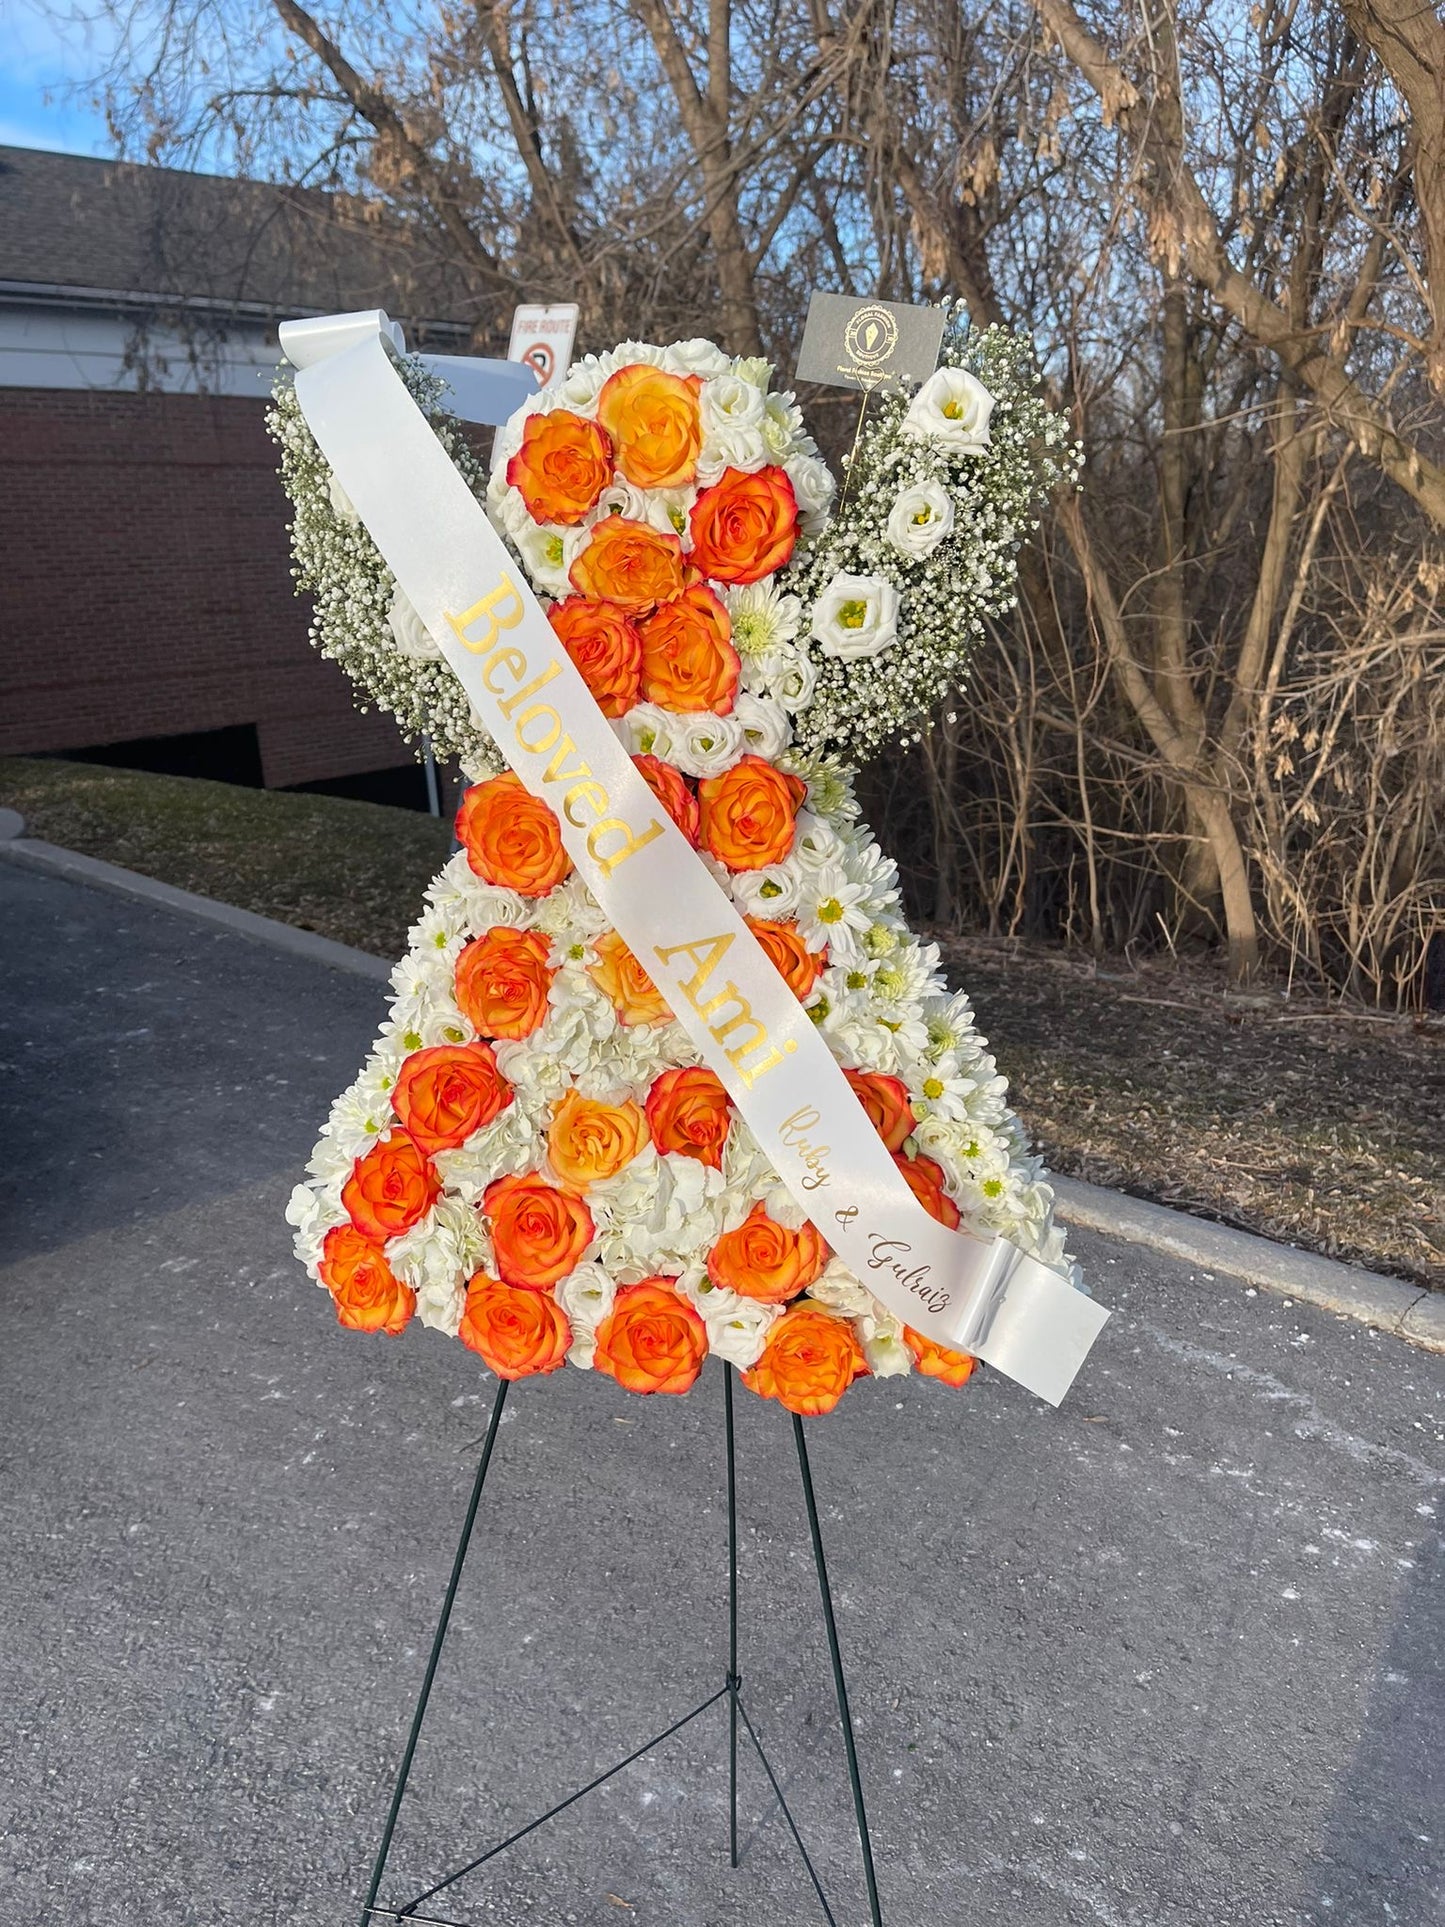 My little Angel/Funeral Arrangements - Floral Fashion Boutique